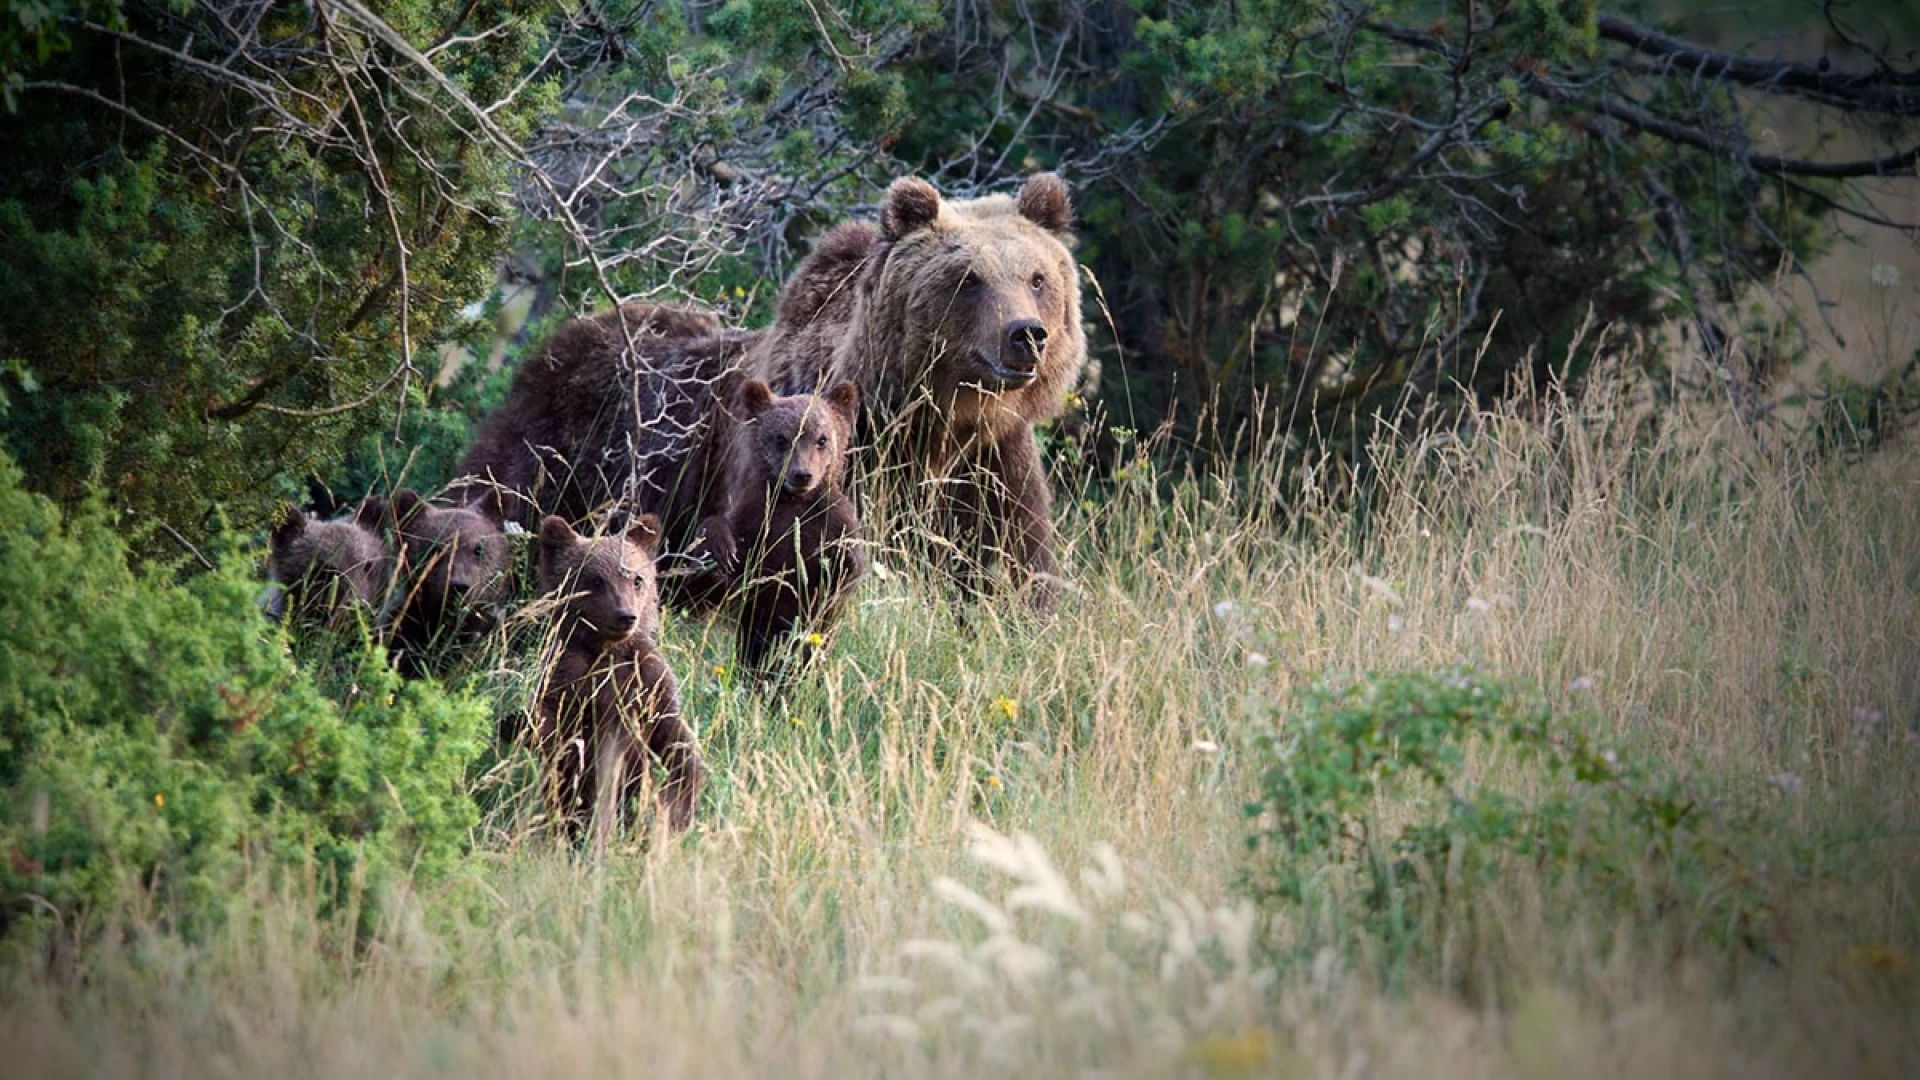 Un nuovo finanziamento europeo aiuterà a convivere con gli orsi in Europa